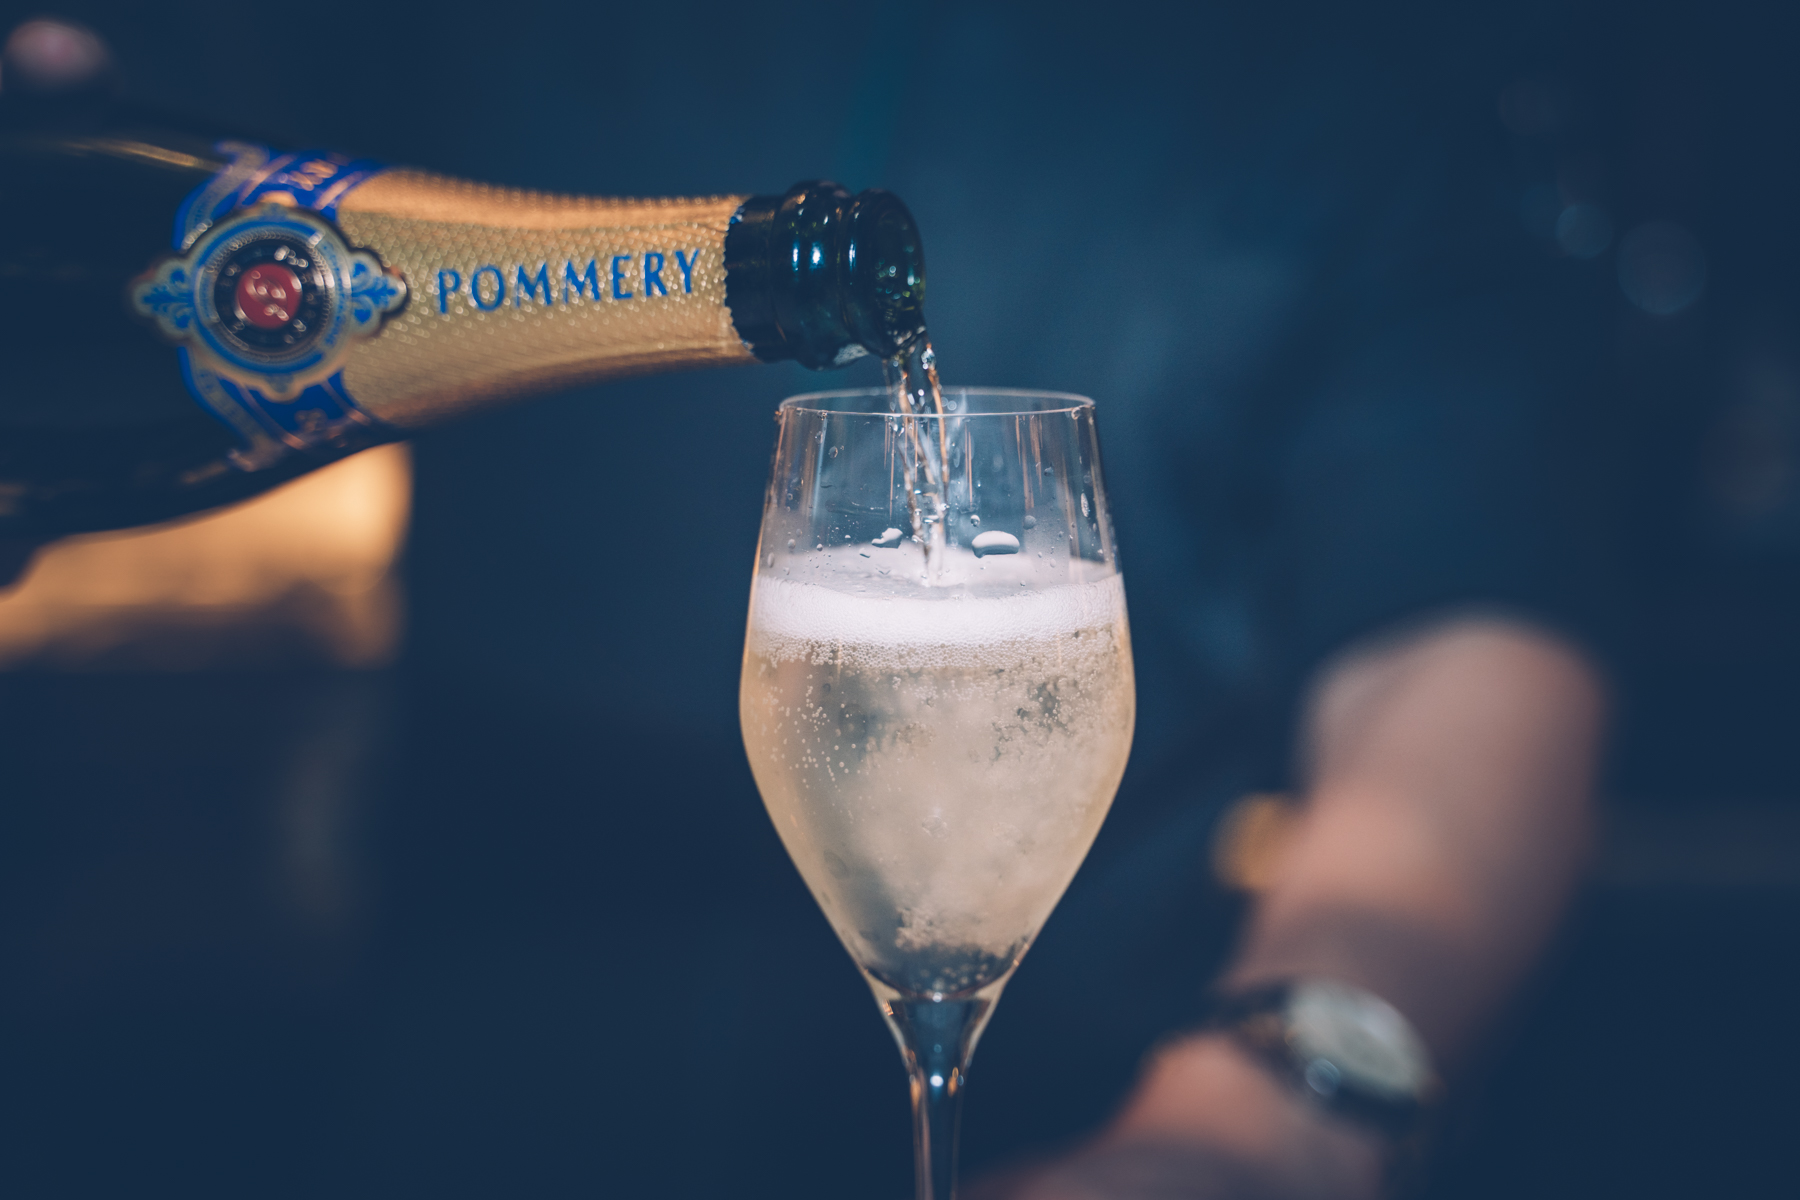 Champagner Cocktails Silvester – ©wunderland media GmbH